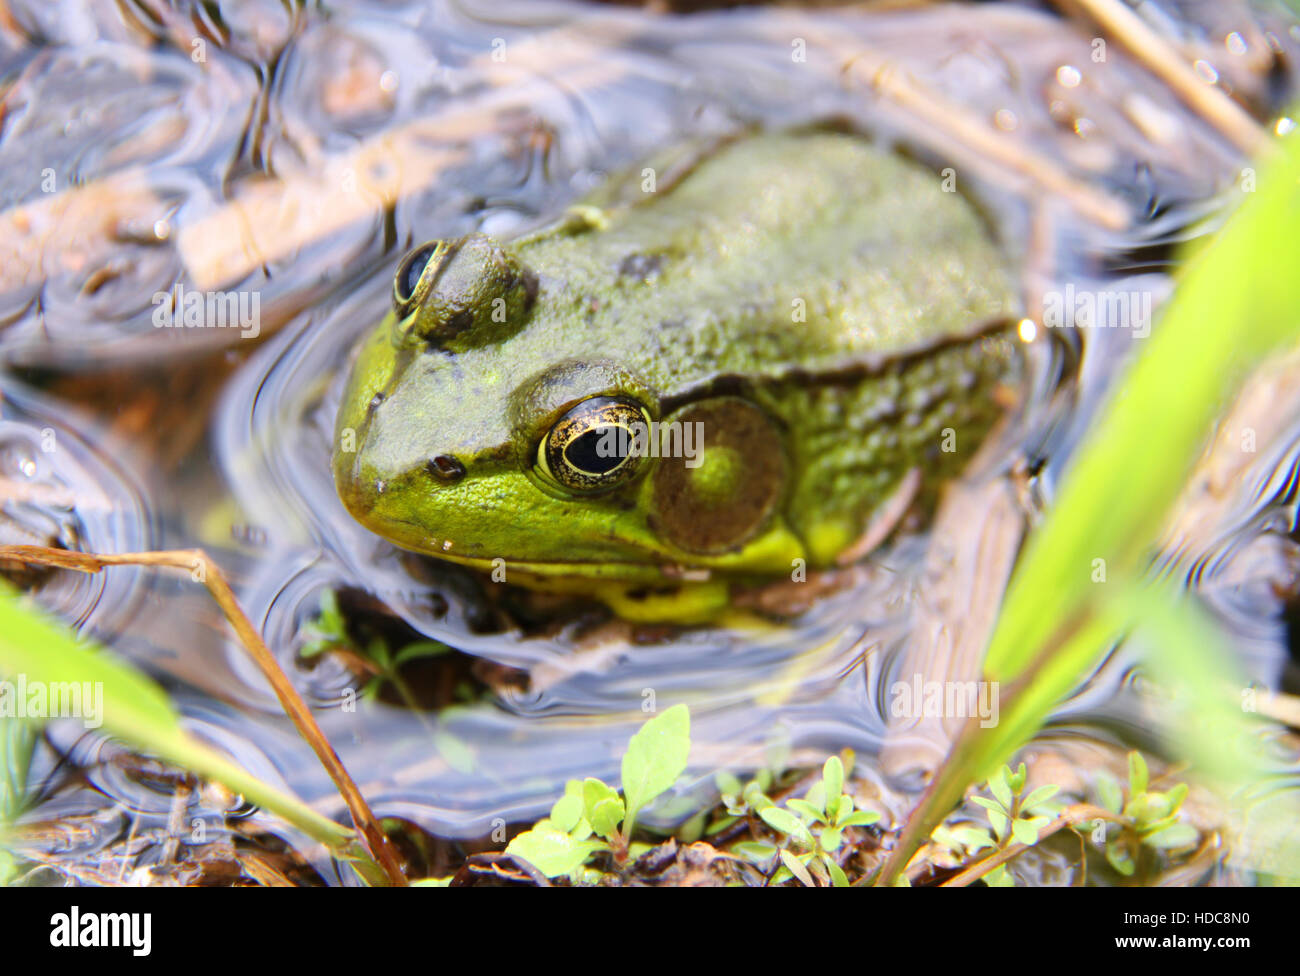 Nördlichen grüner Frosch sitzt im Wasser, Upstate New York, USA. Stockfoto